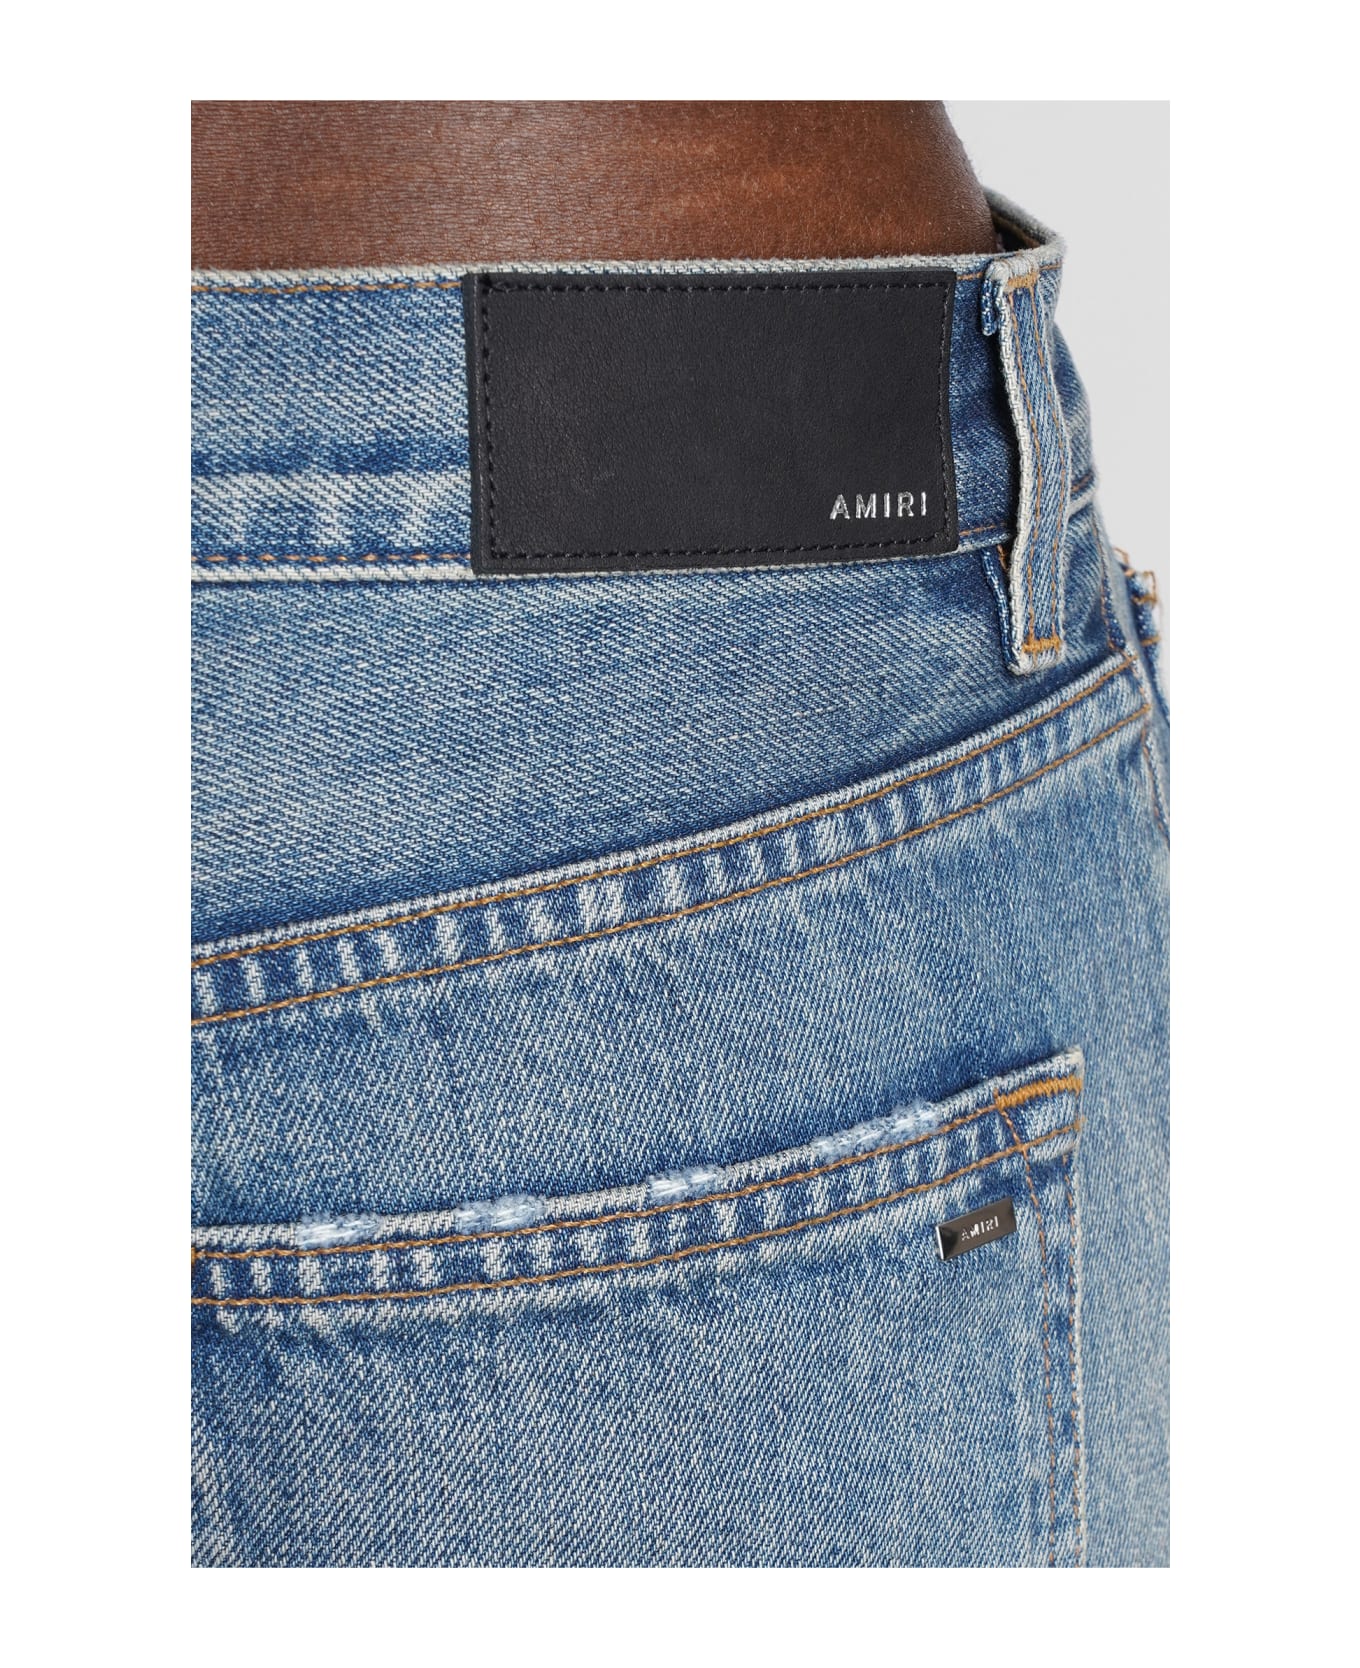 AMIRI Jeans In Cyan Denim - 885